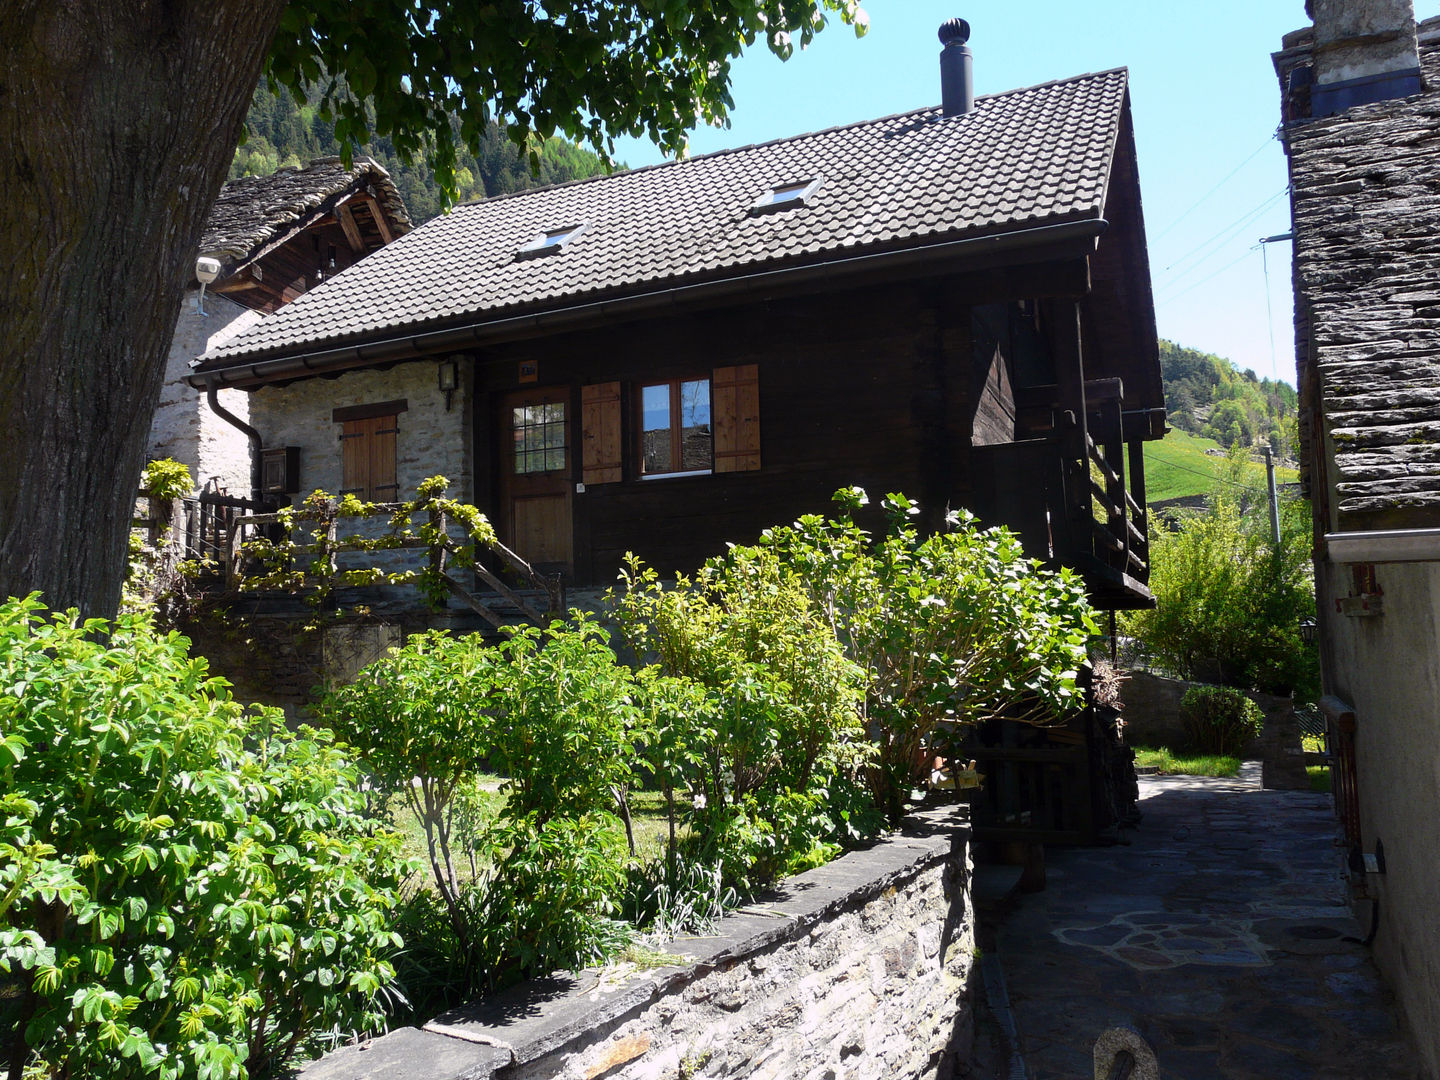 Casa vacanze in Svizzera, Interni d' Architettura Interni d' Architettura منازل